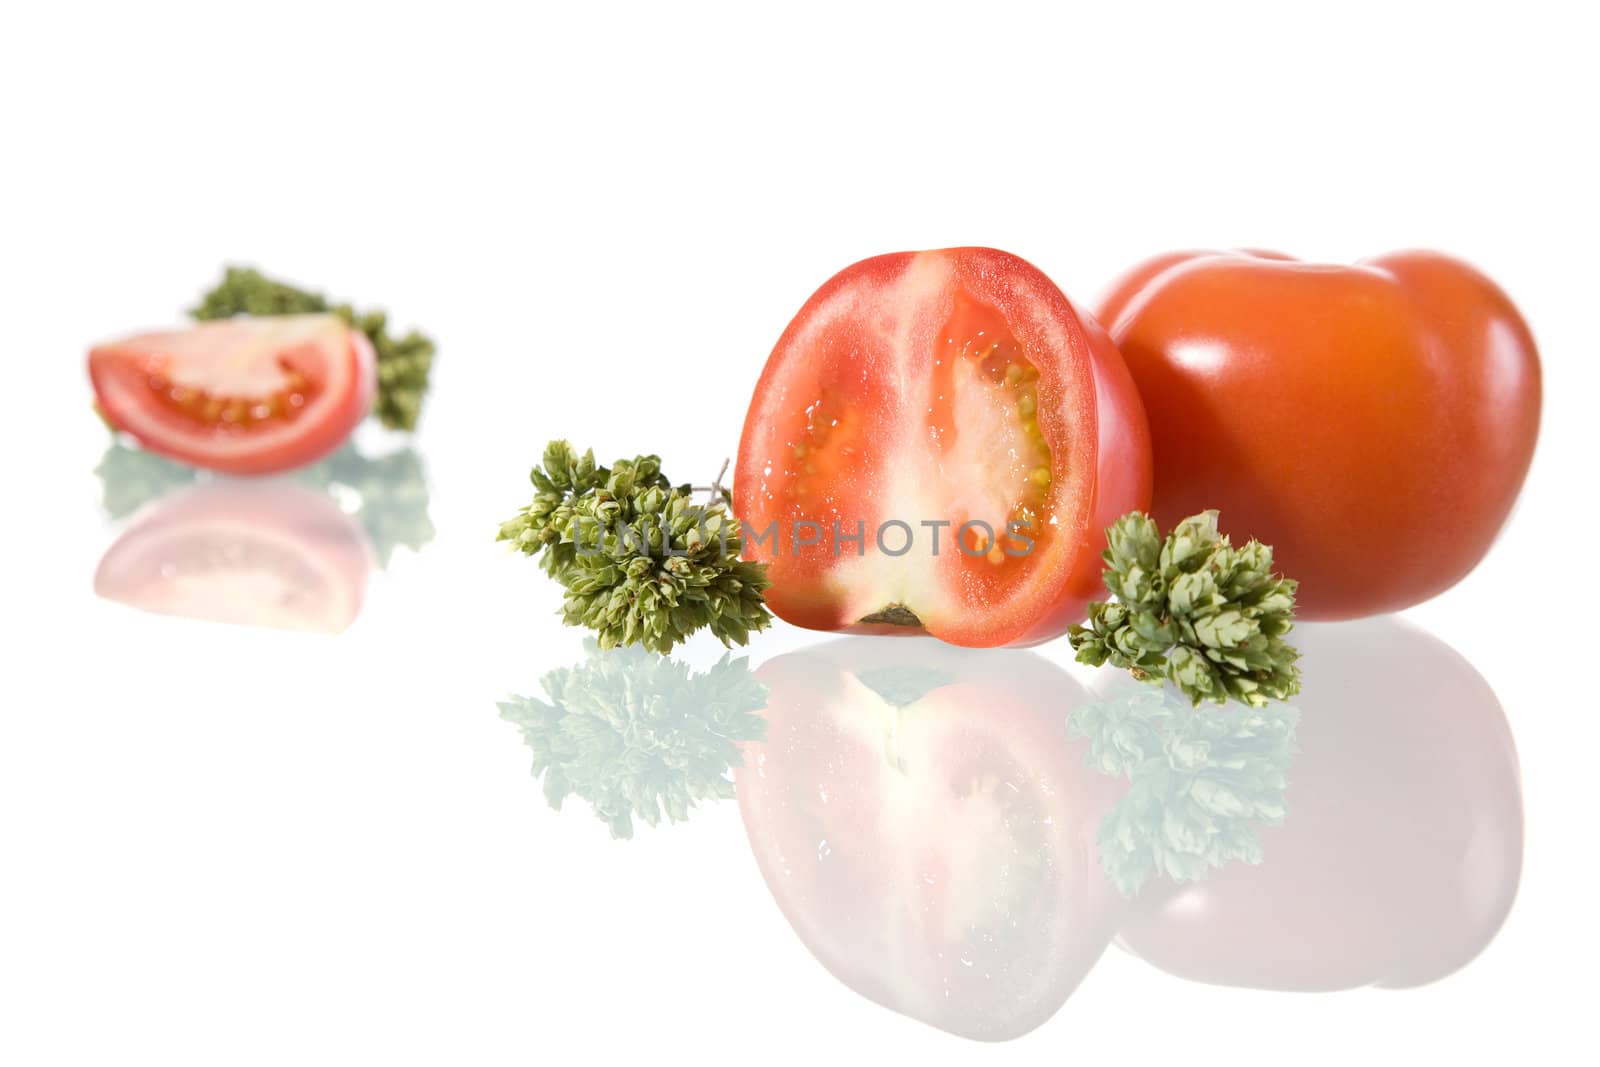 Tomato and Oregano by ajn